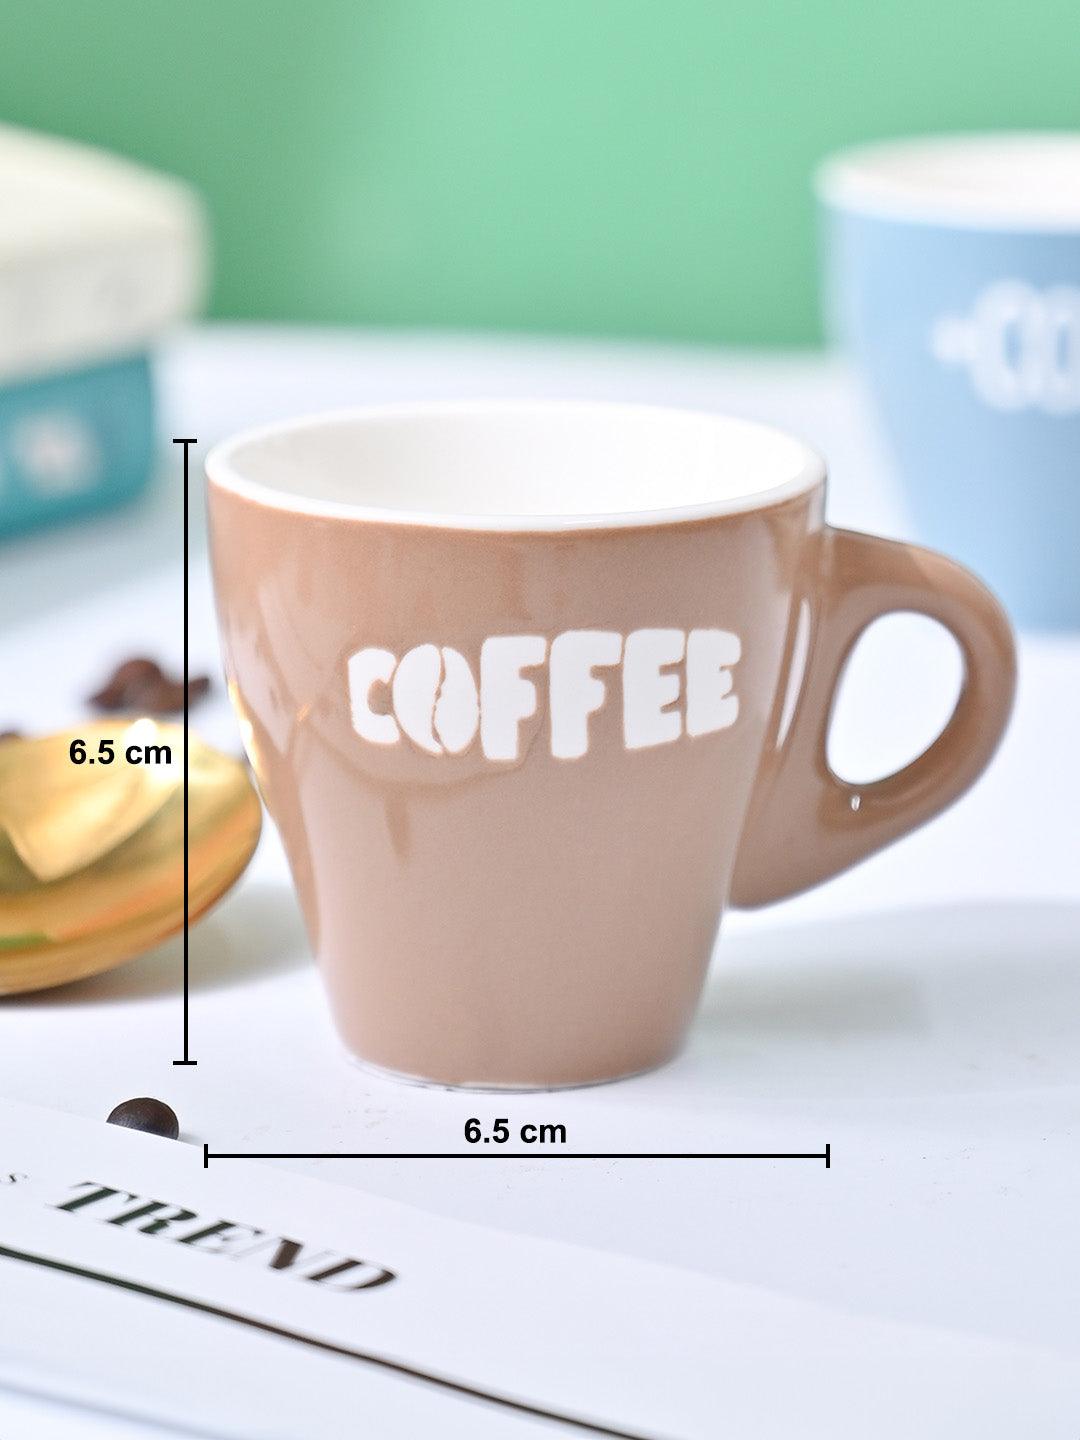 VON CASA Light Brown Coffee Mug - Set Of 2, 90Ml Each